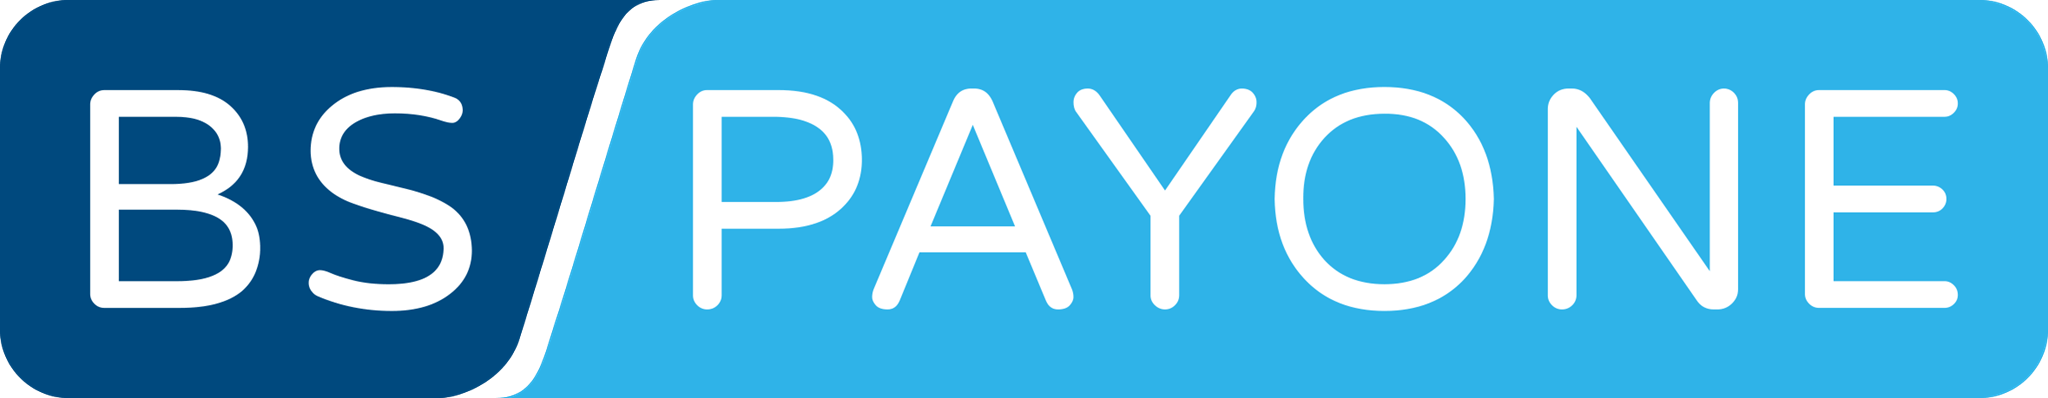 BSPayone-Logo Zahlungsdaten an Buchhaltung